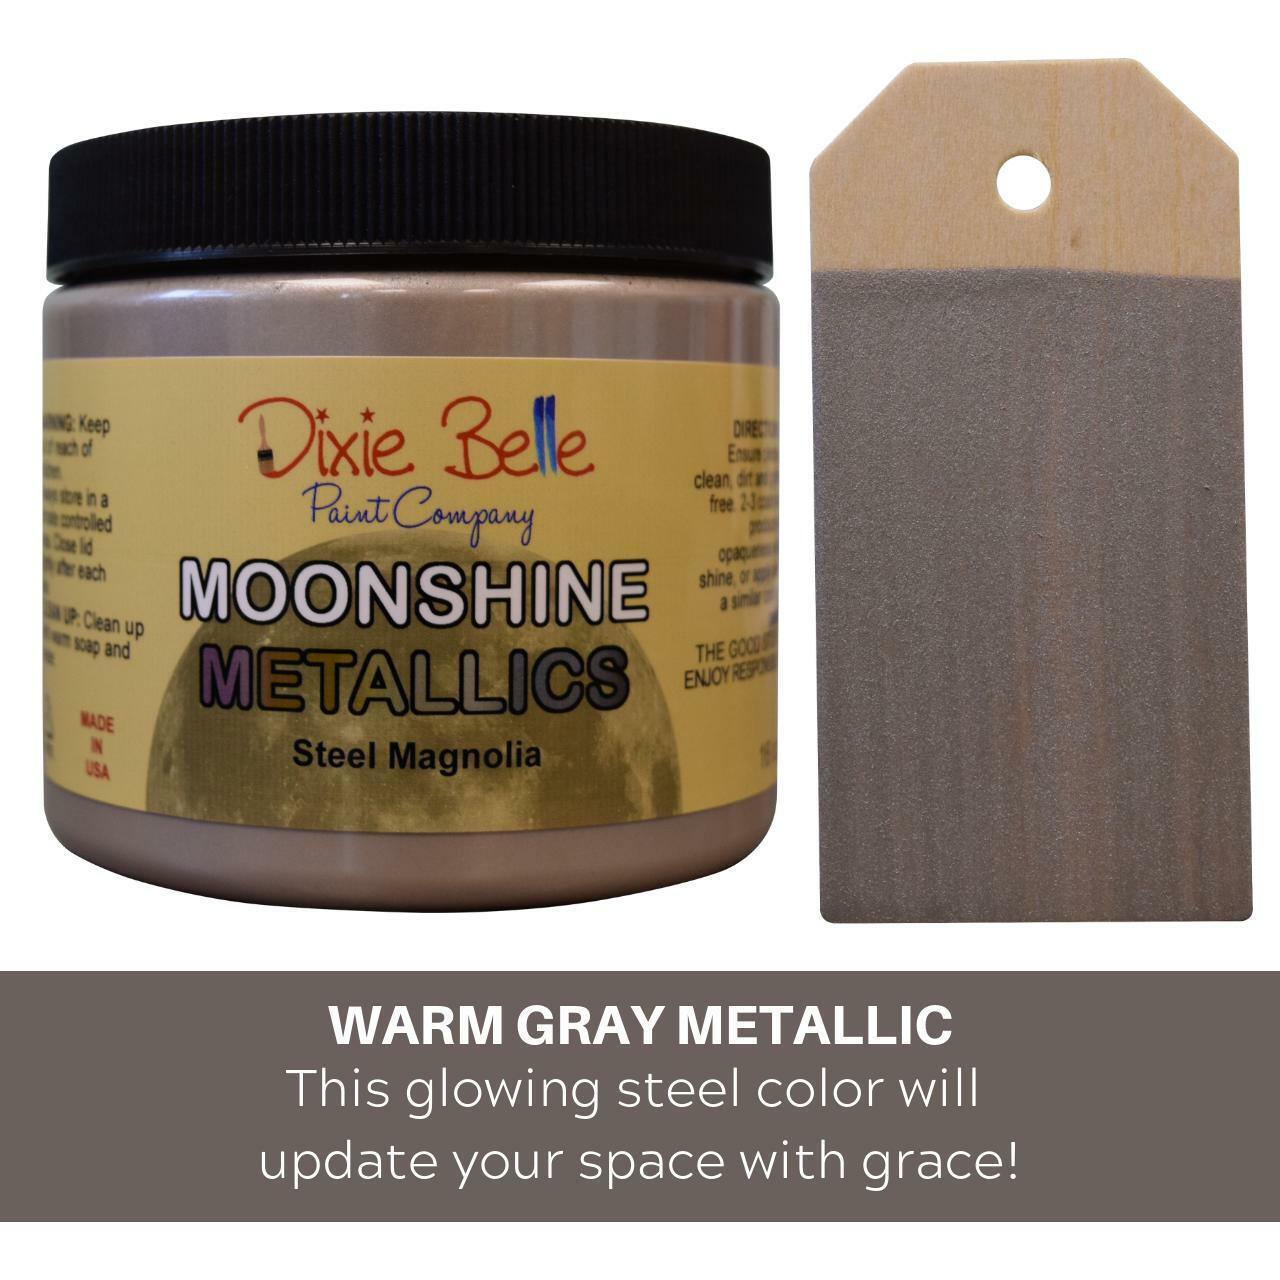 Moonshine Metallic | Steel Magnolia | Magnolie - Lioness Vintage